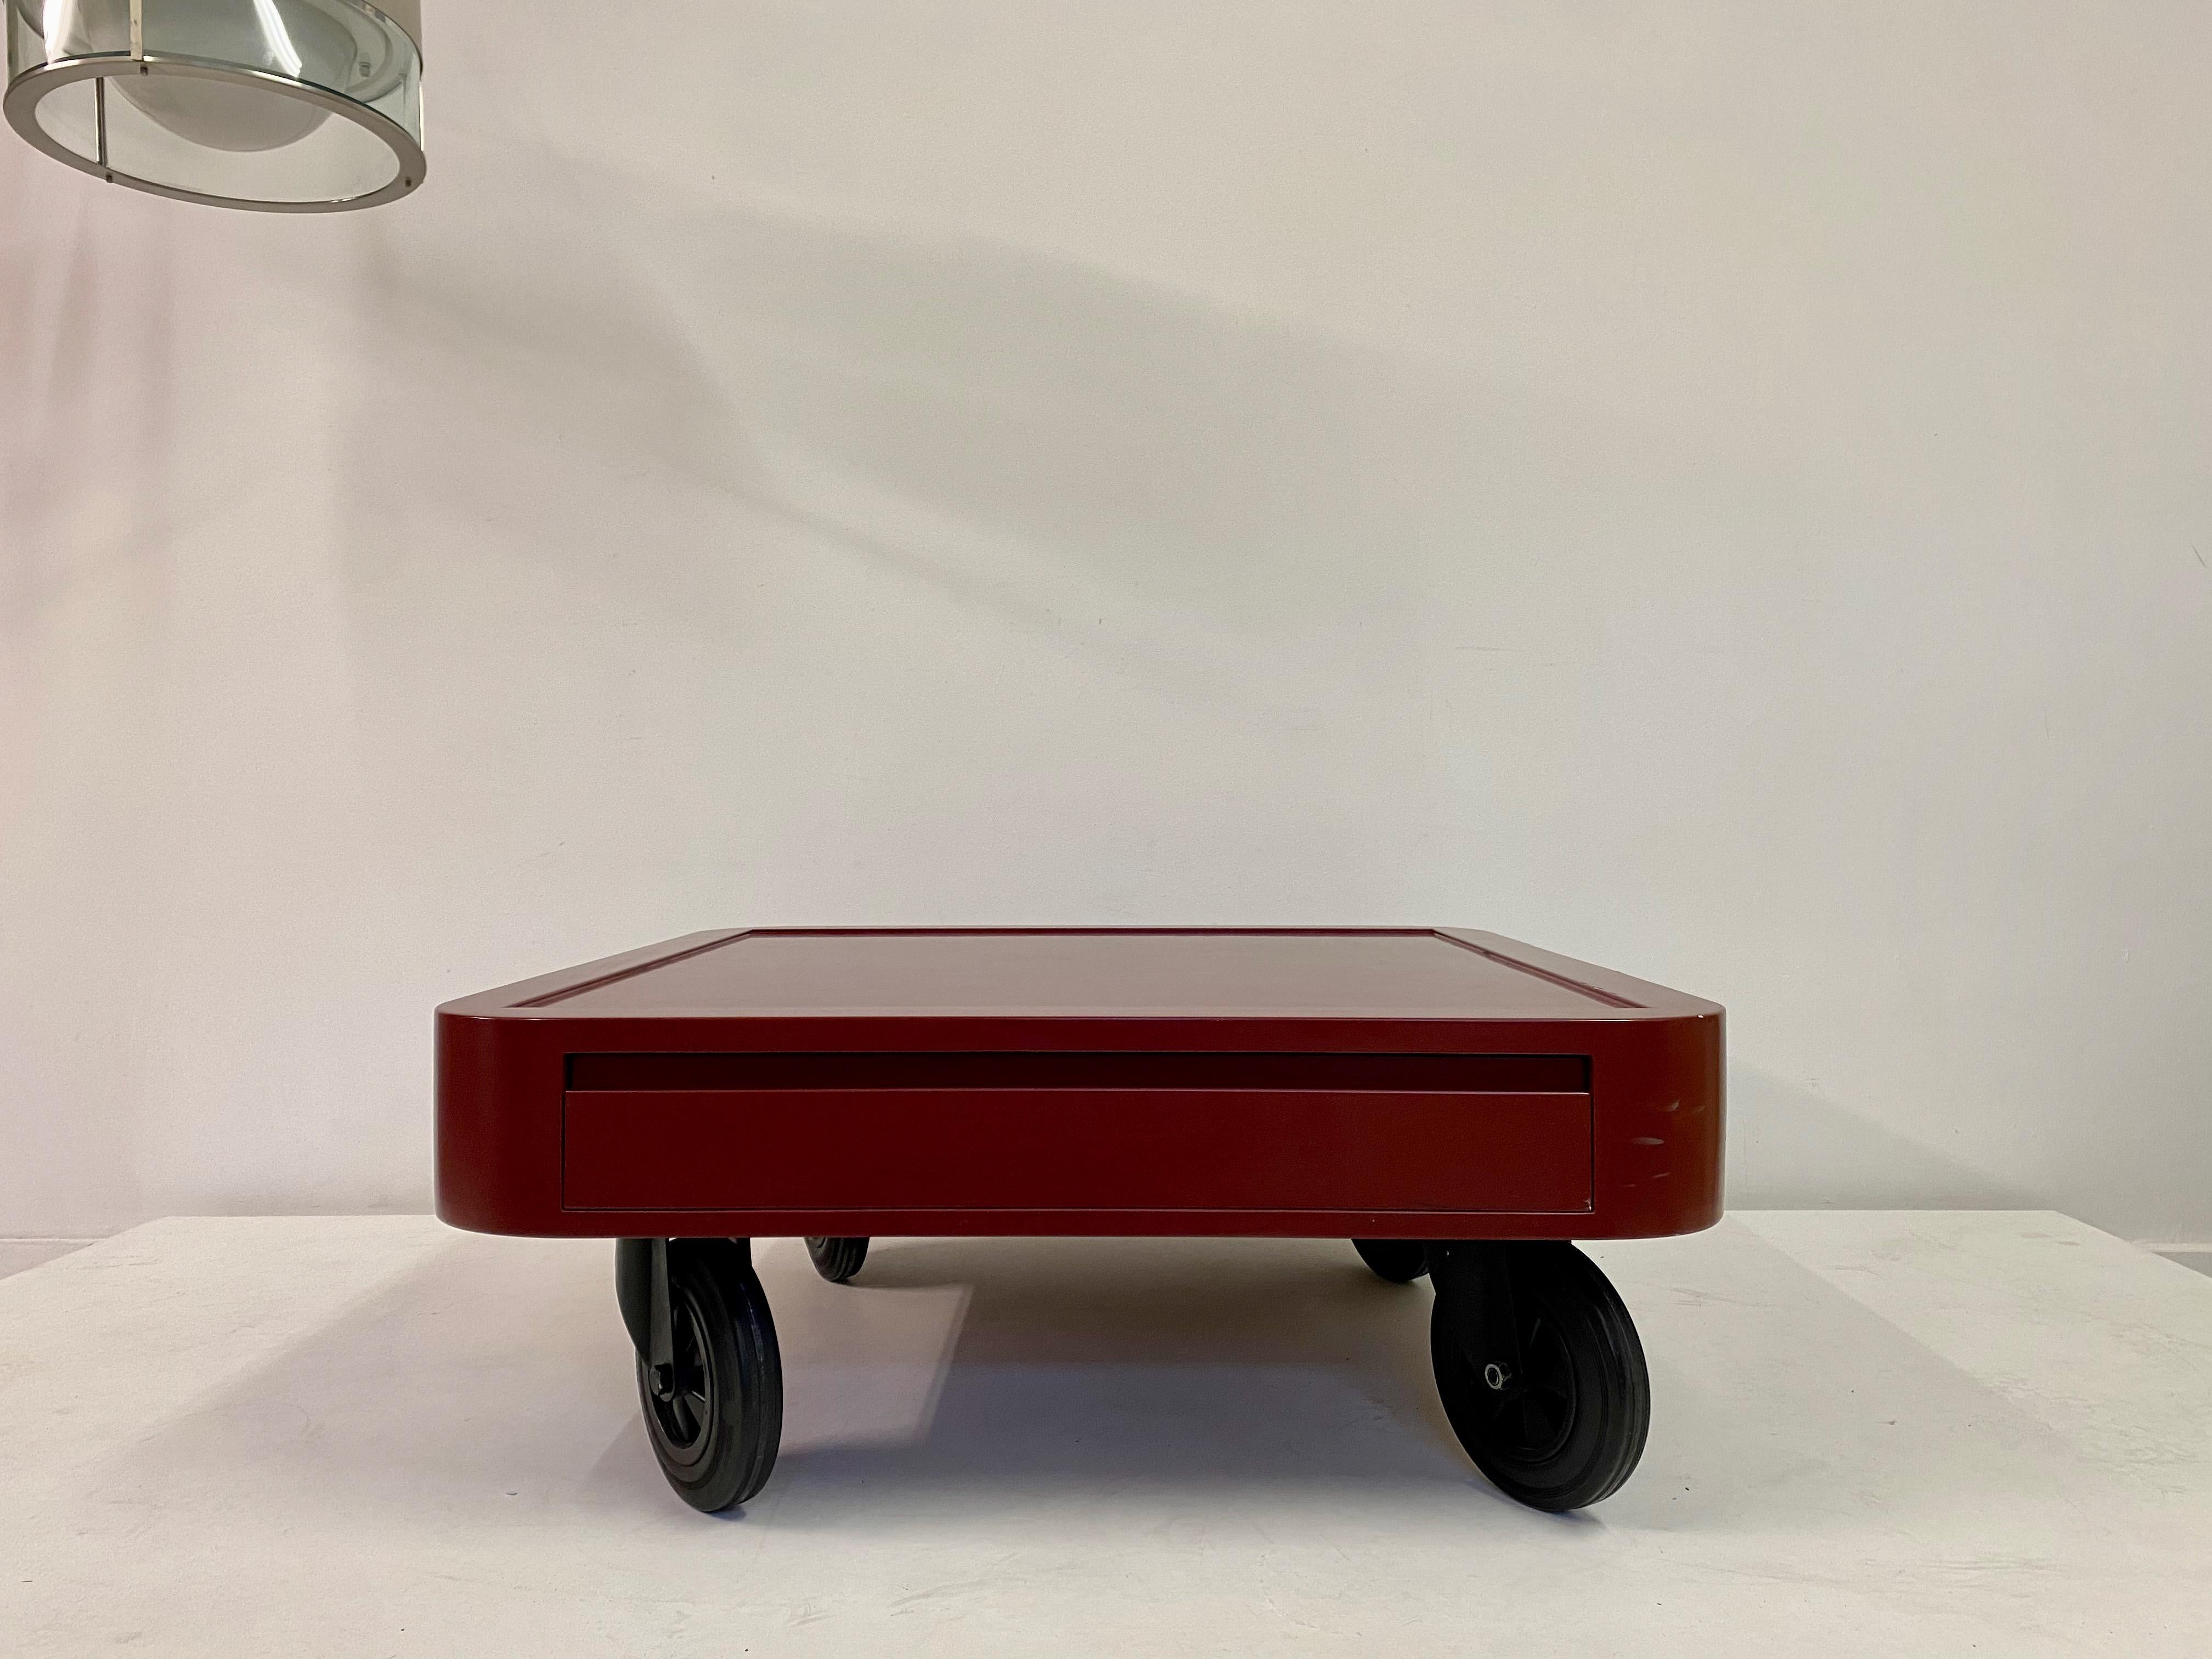 Table basse

Sur des roues en caoutchouc

Stratifié rouge

Un tiroir

L'Italie des années 1980